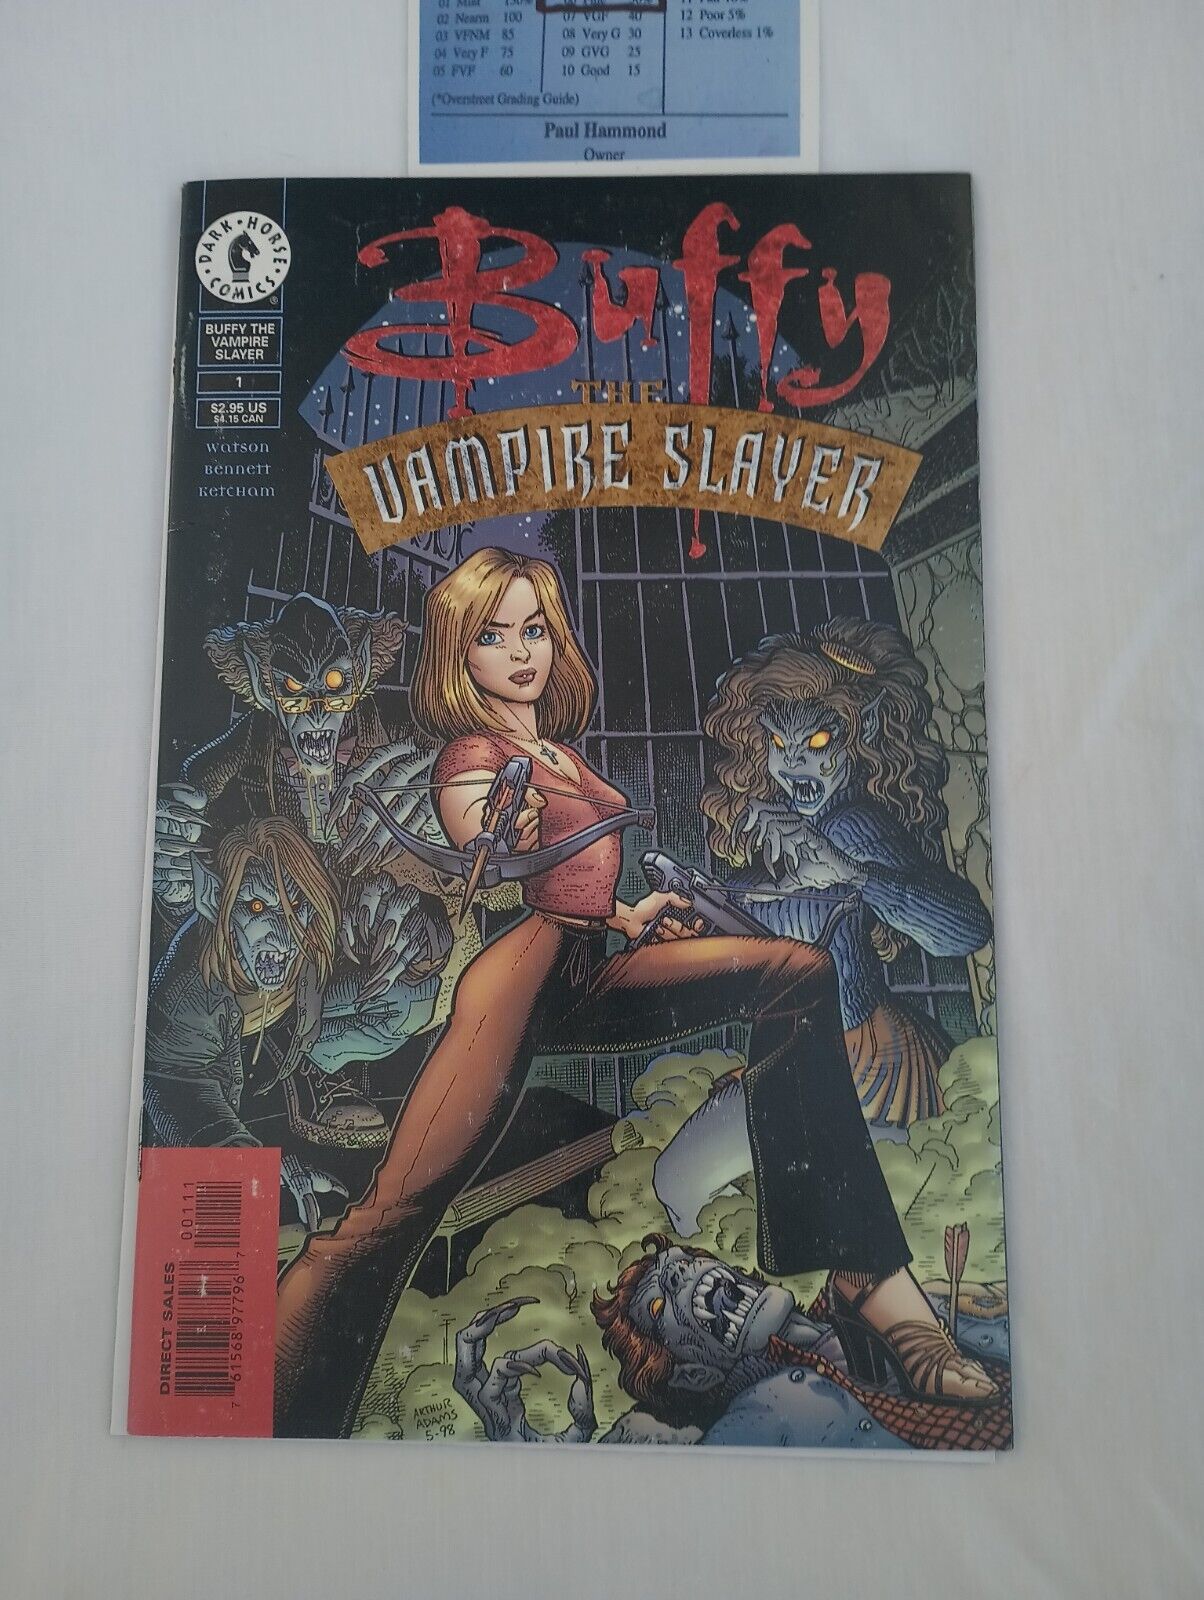 Buffy the Vampire Slayer #1 (Dark Horse Comics September 1998)